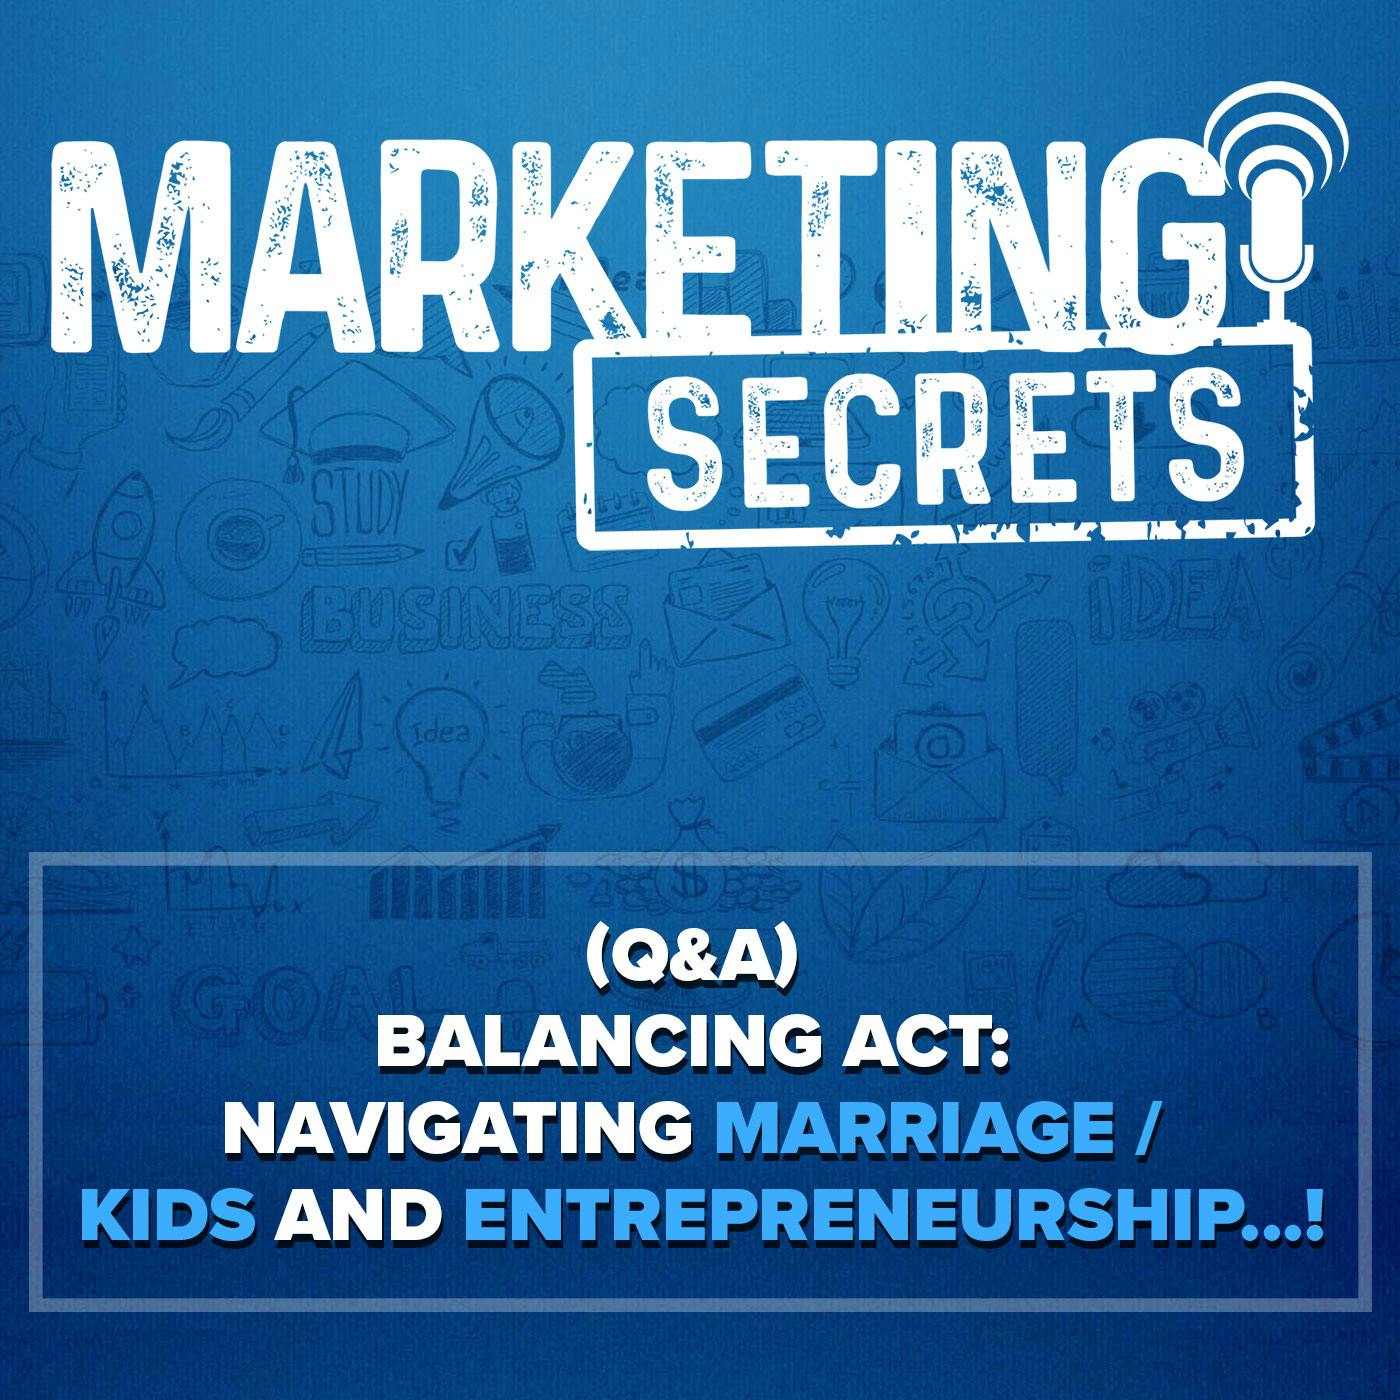 (Q&A) Balancing Act: Navigating Marriage / Kids and Entrepreneurship...!